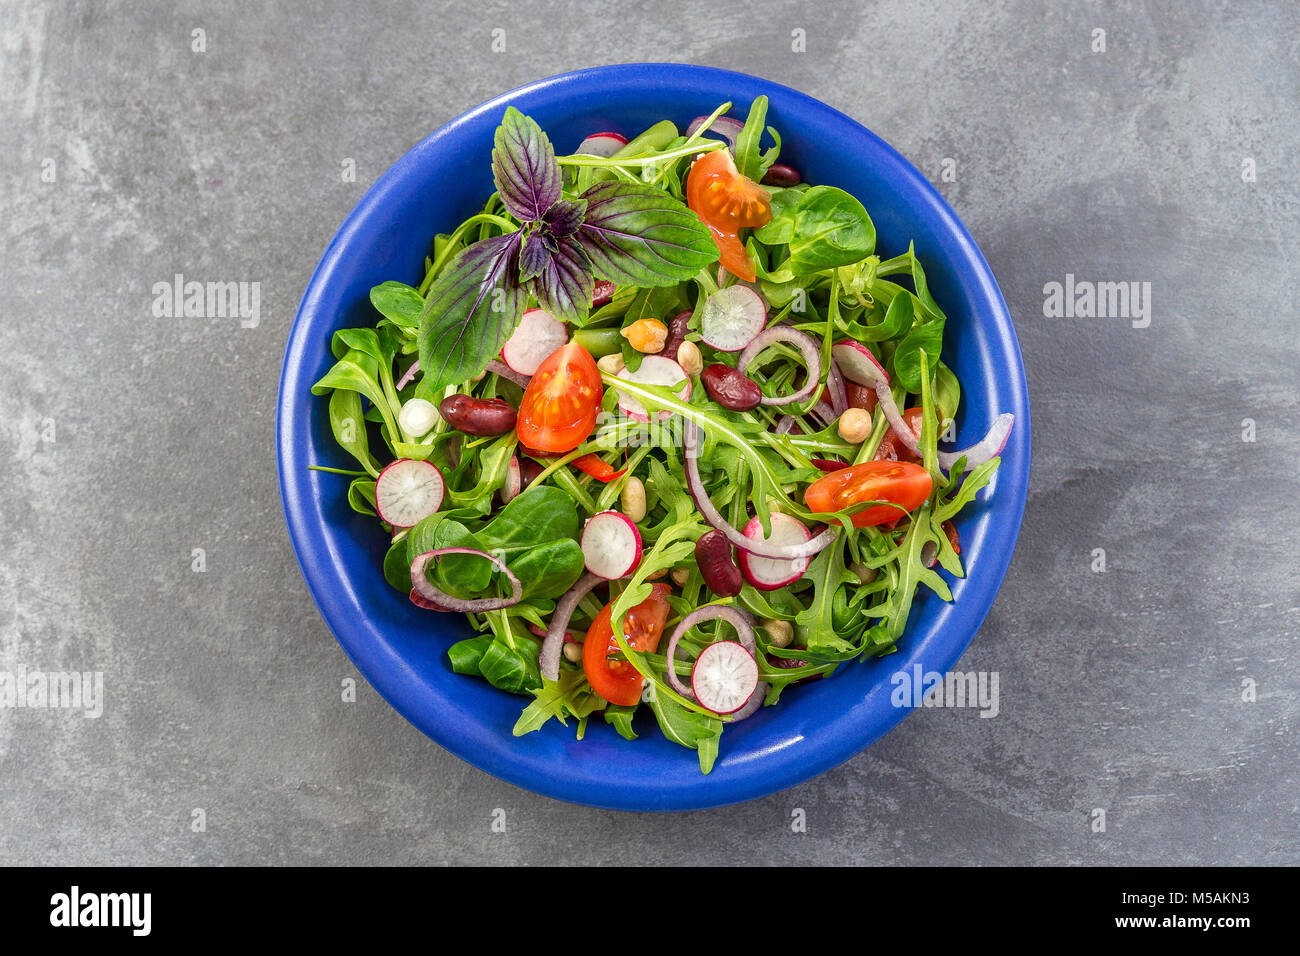 Frische Kraut Salat mit Blattgemüse und kapuzinerkresse Blumen in einem blauen Keramik Schüssel serviert. Stockfoto